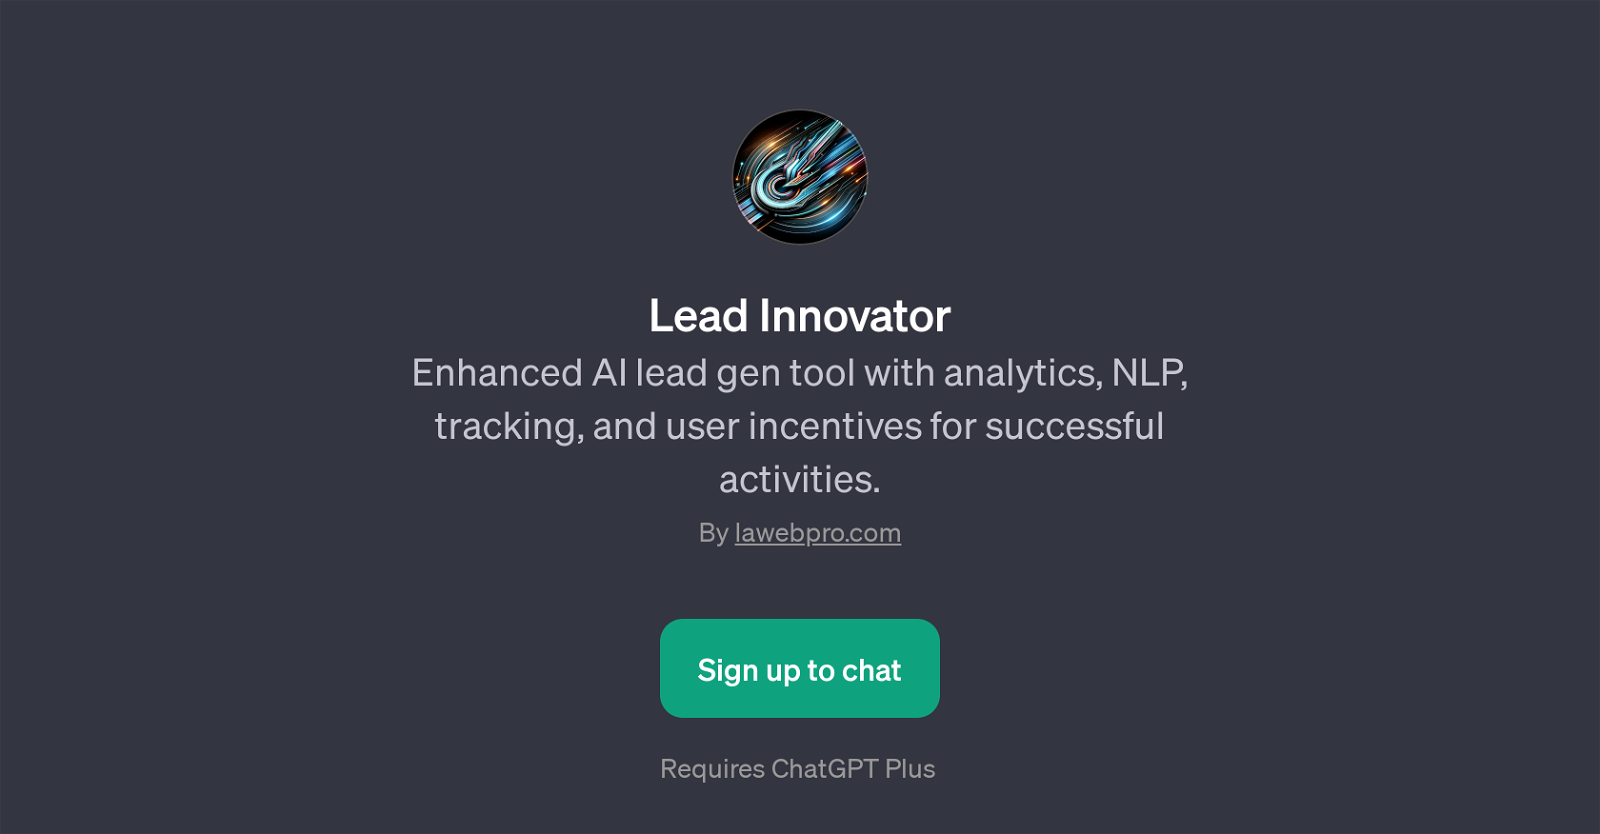 Lead Innovator website